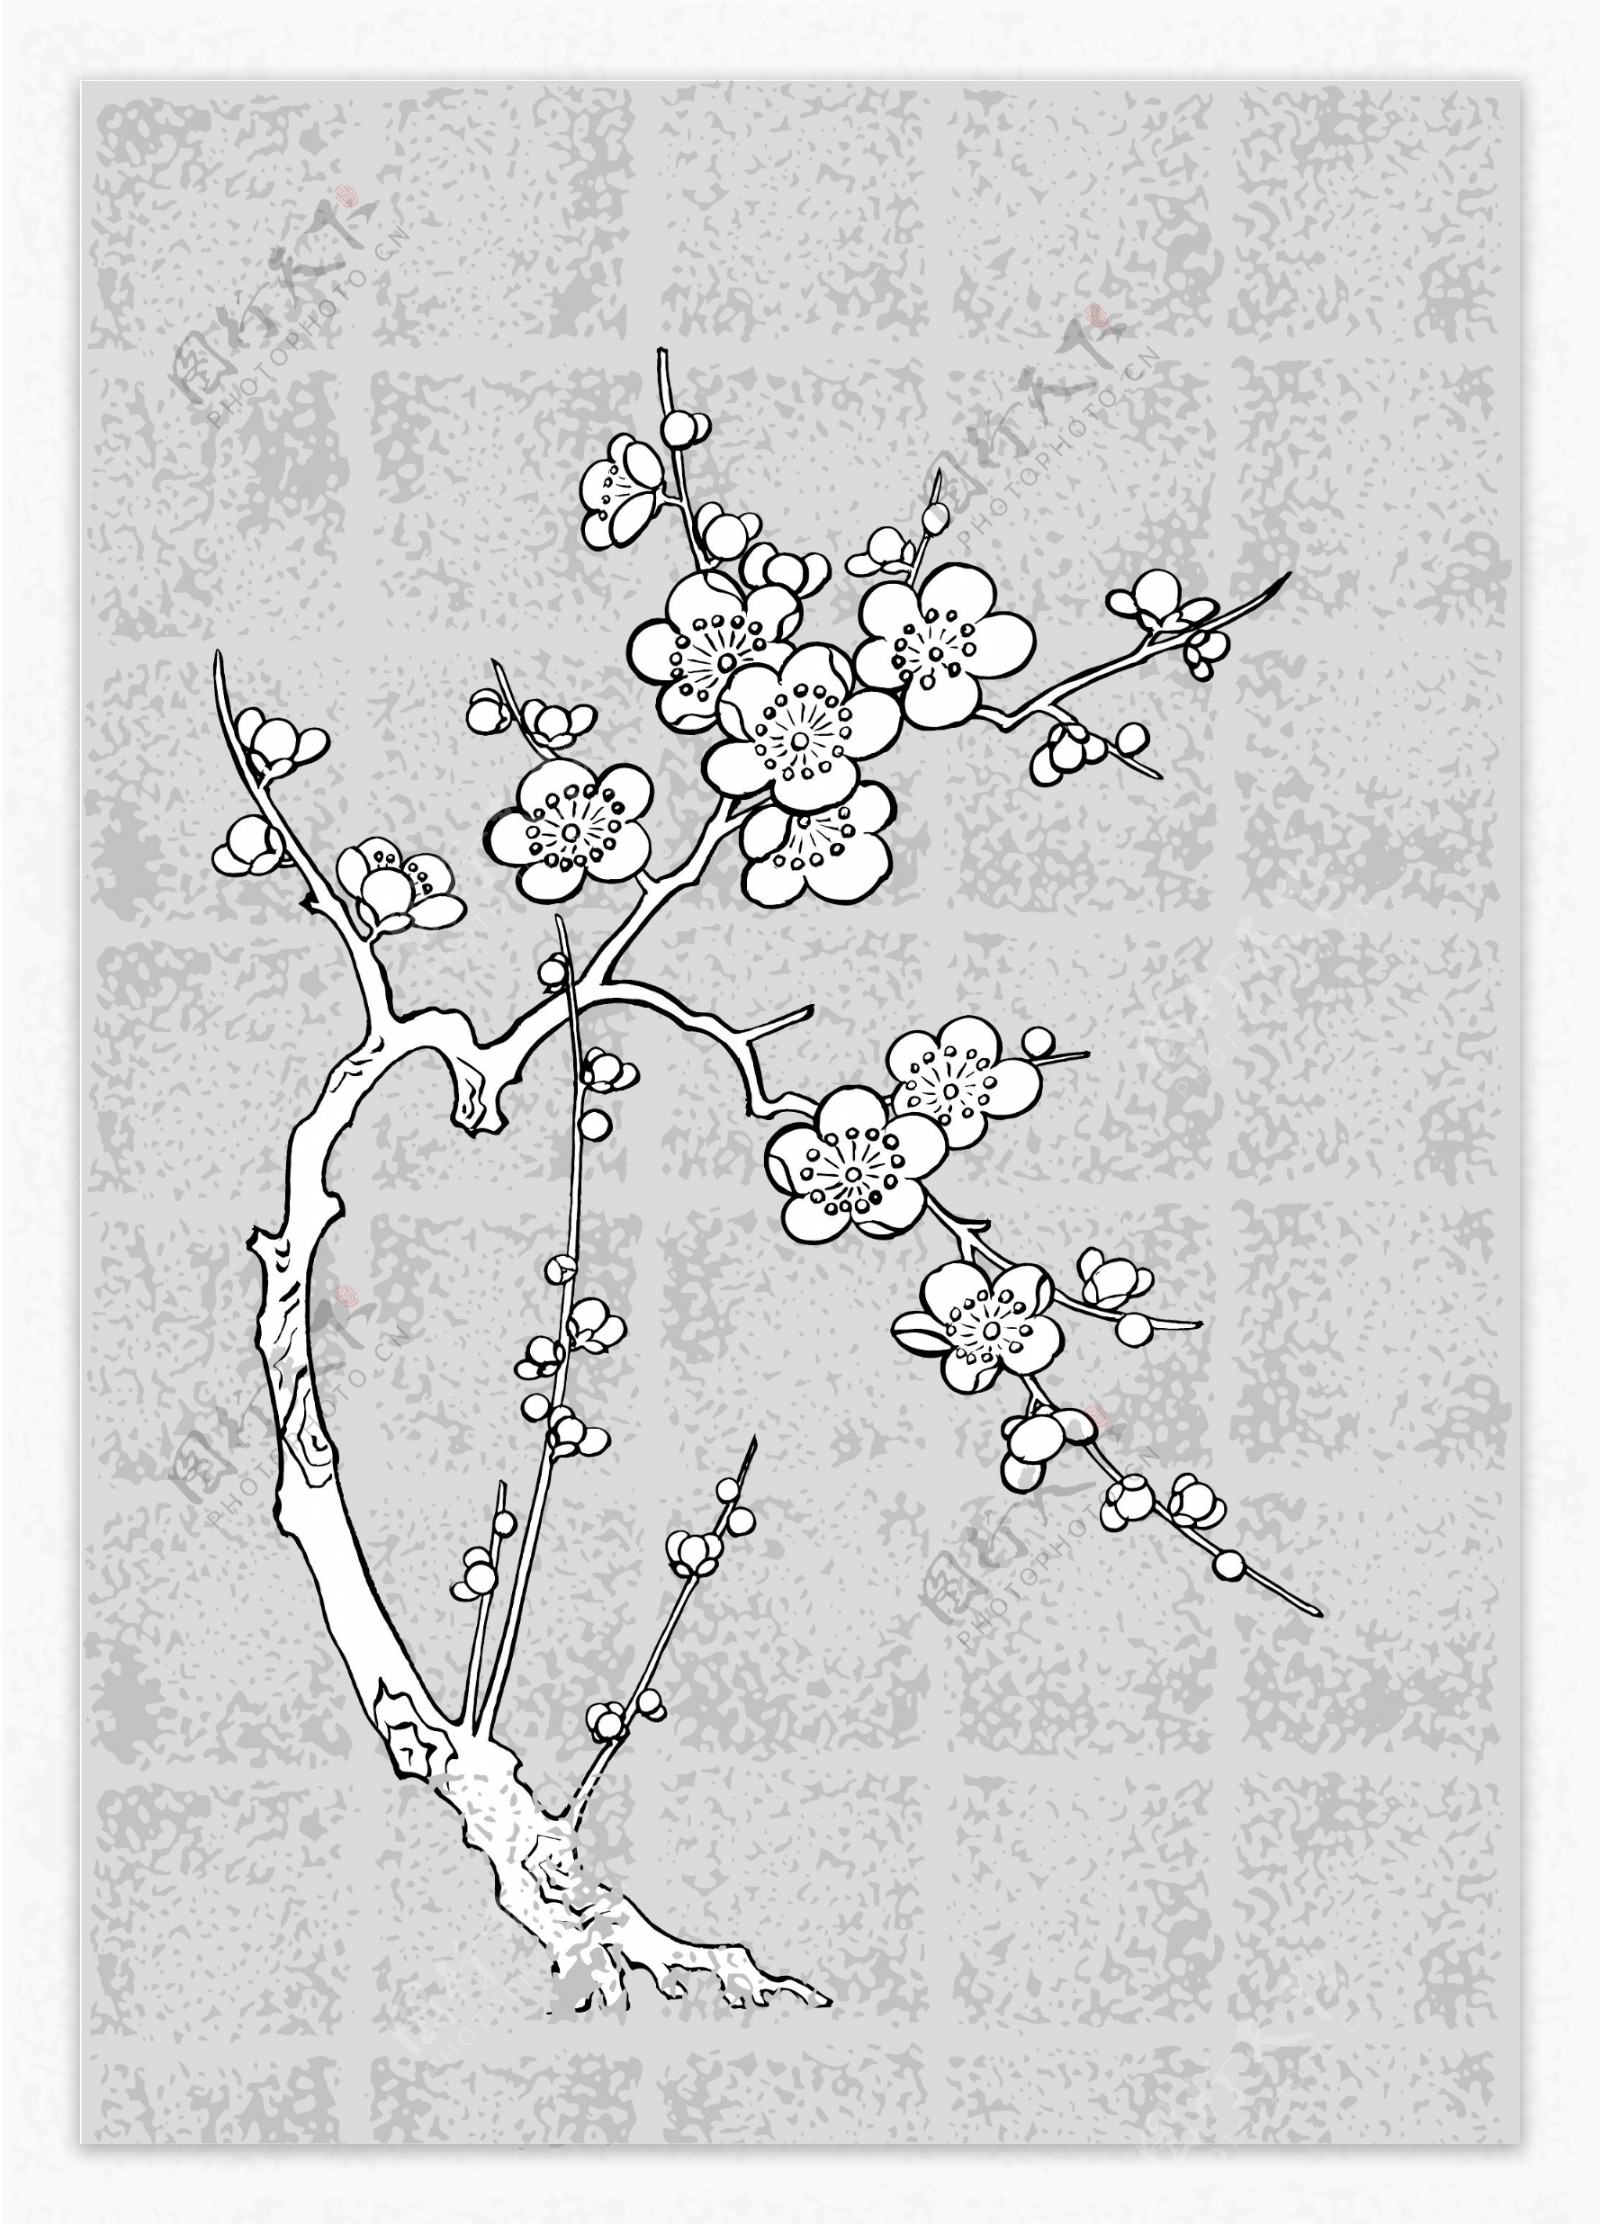 日本线描植物花卉矢量素材系列图片